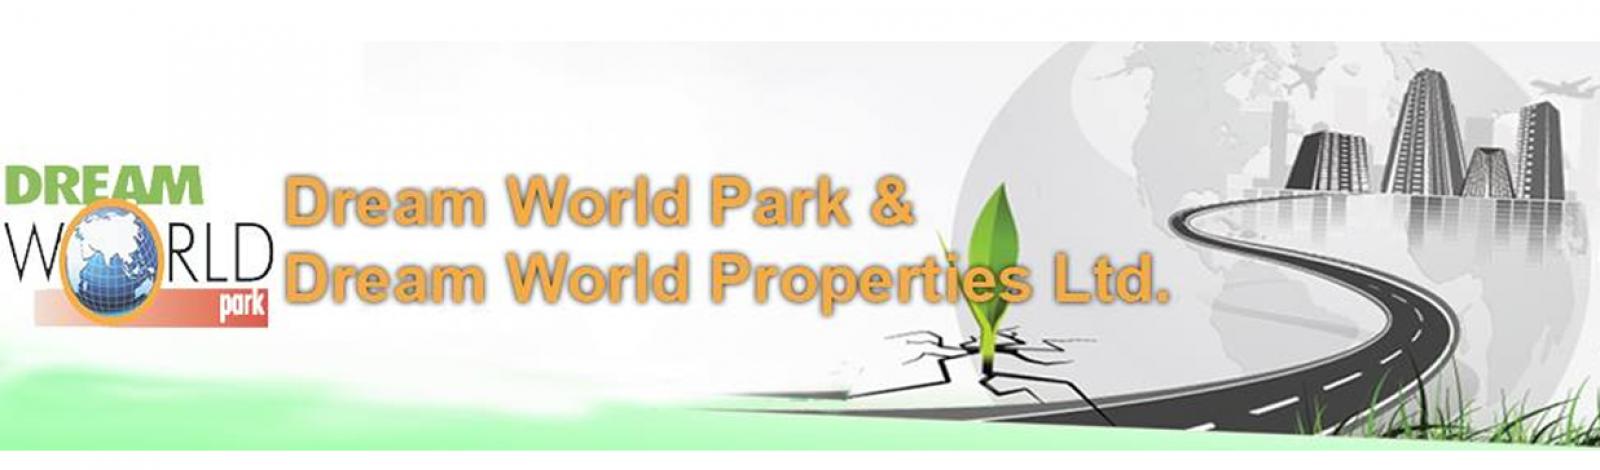 Dream World Park (Pvt.) Ltd banner